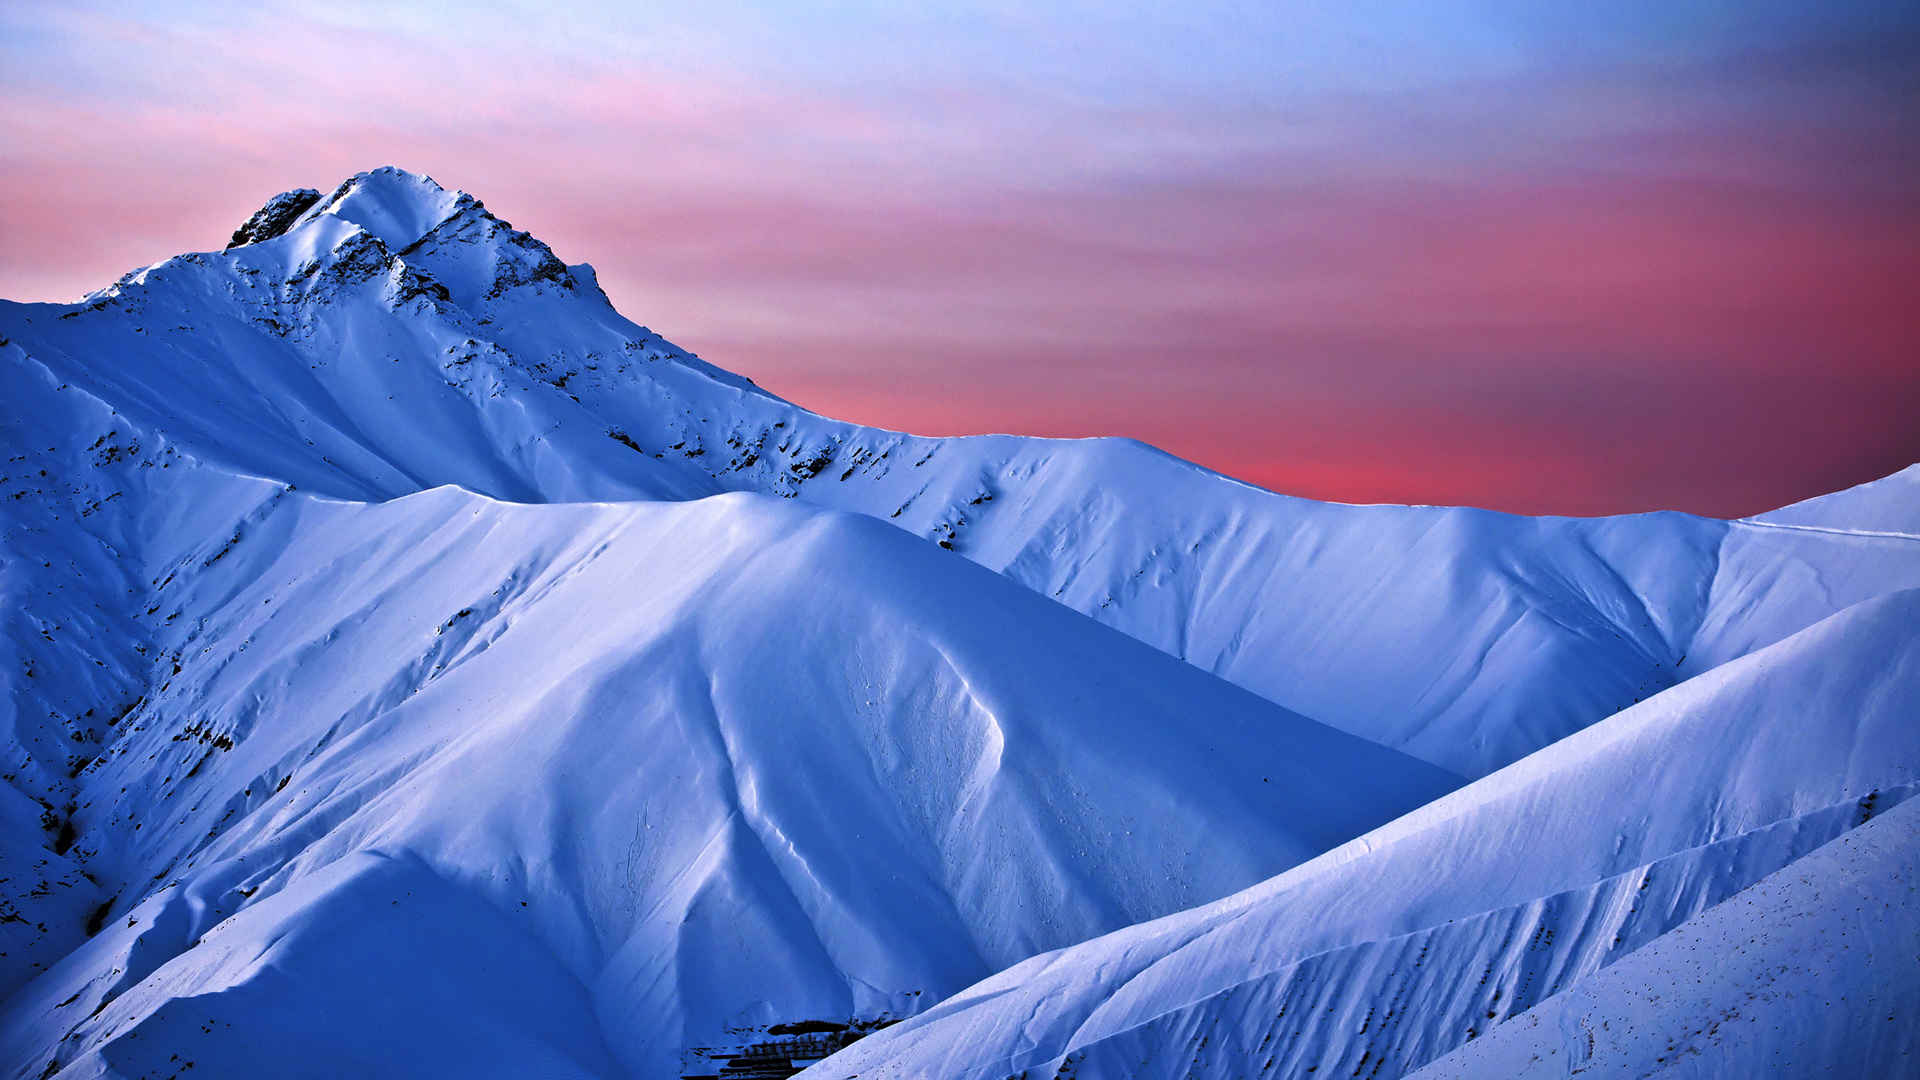 伊朗德黑兰 蓝色的早晨 雪峰风景桌面壁纸-